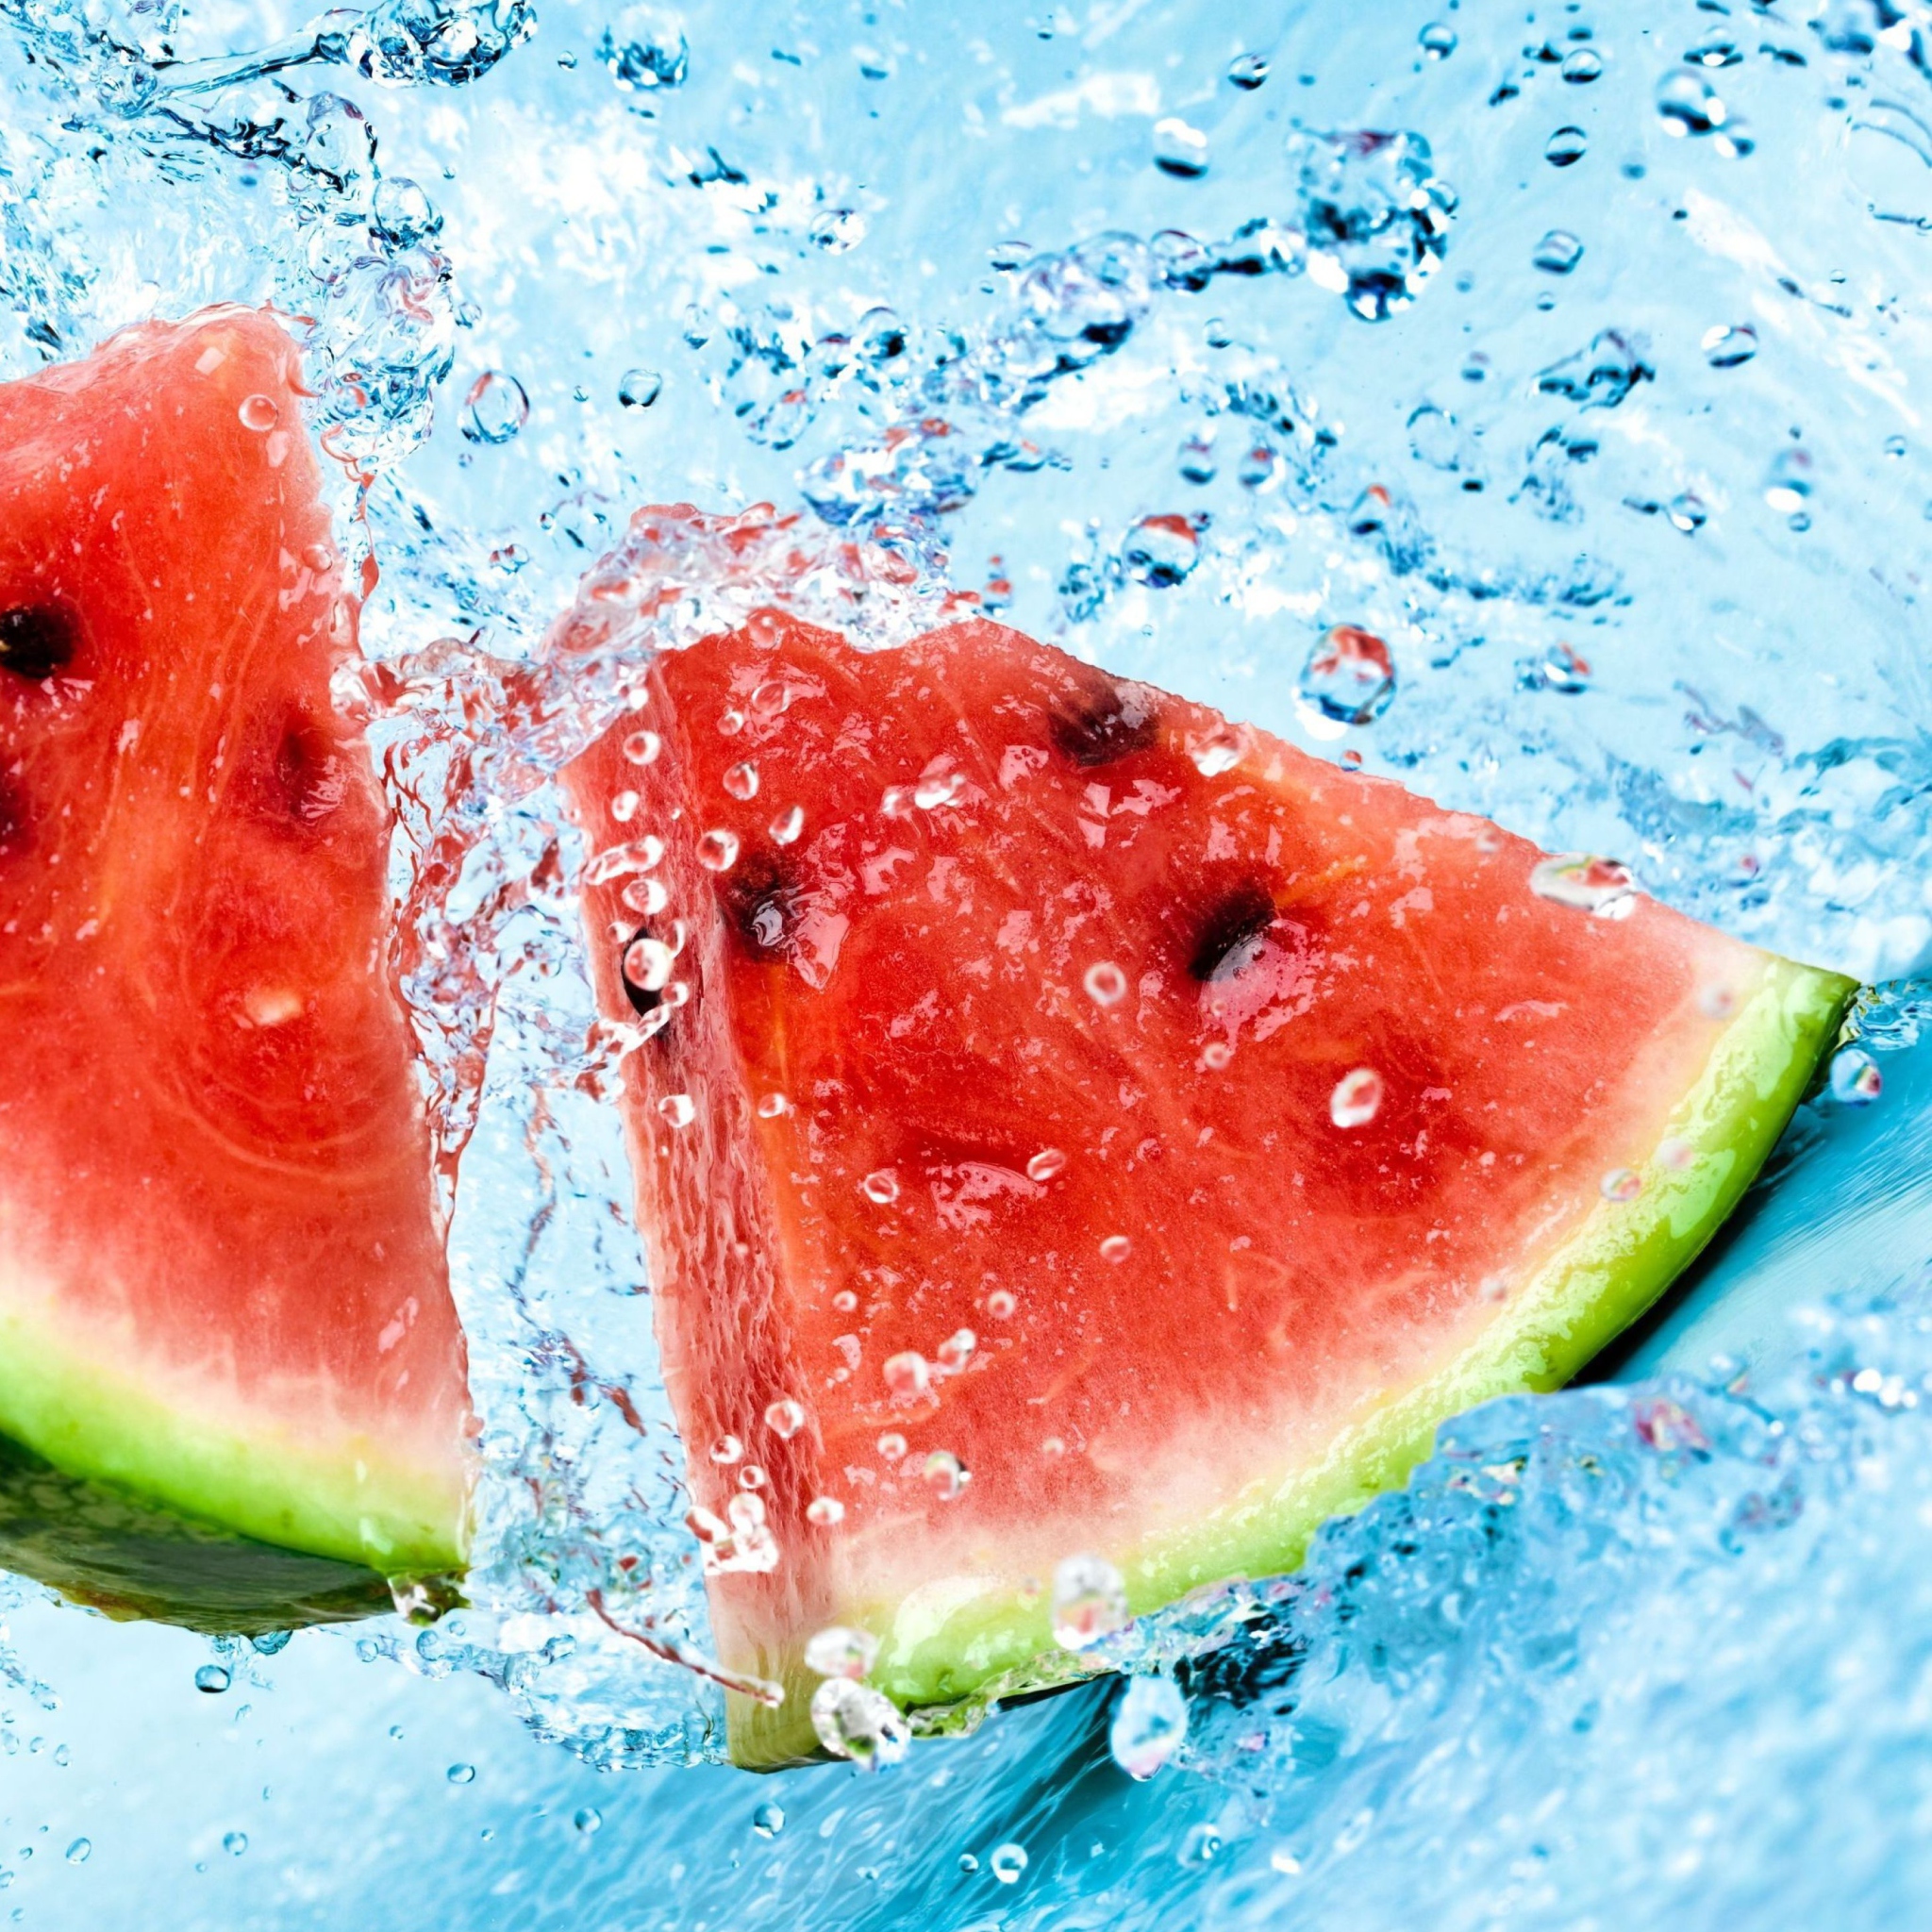 Watermelon In Water wallpaper 2048x2048